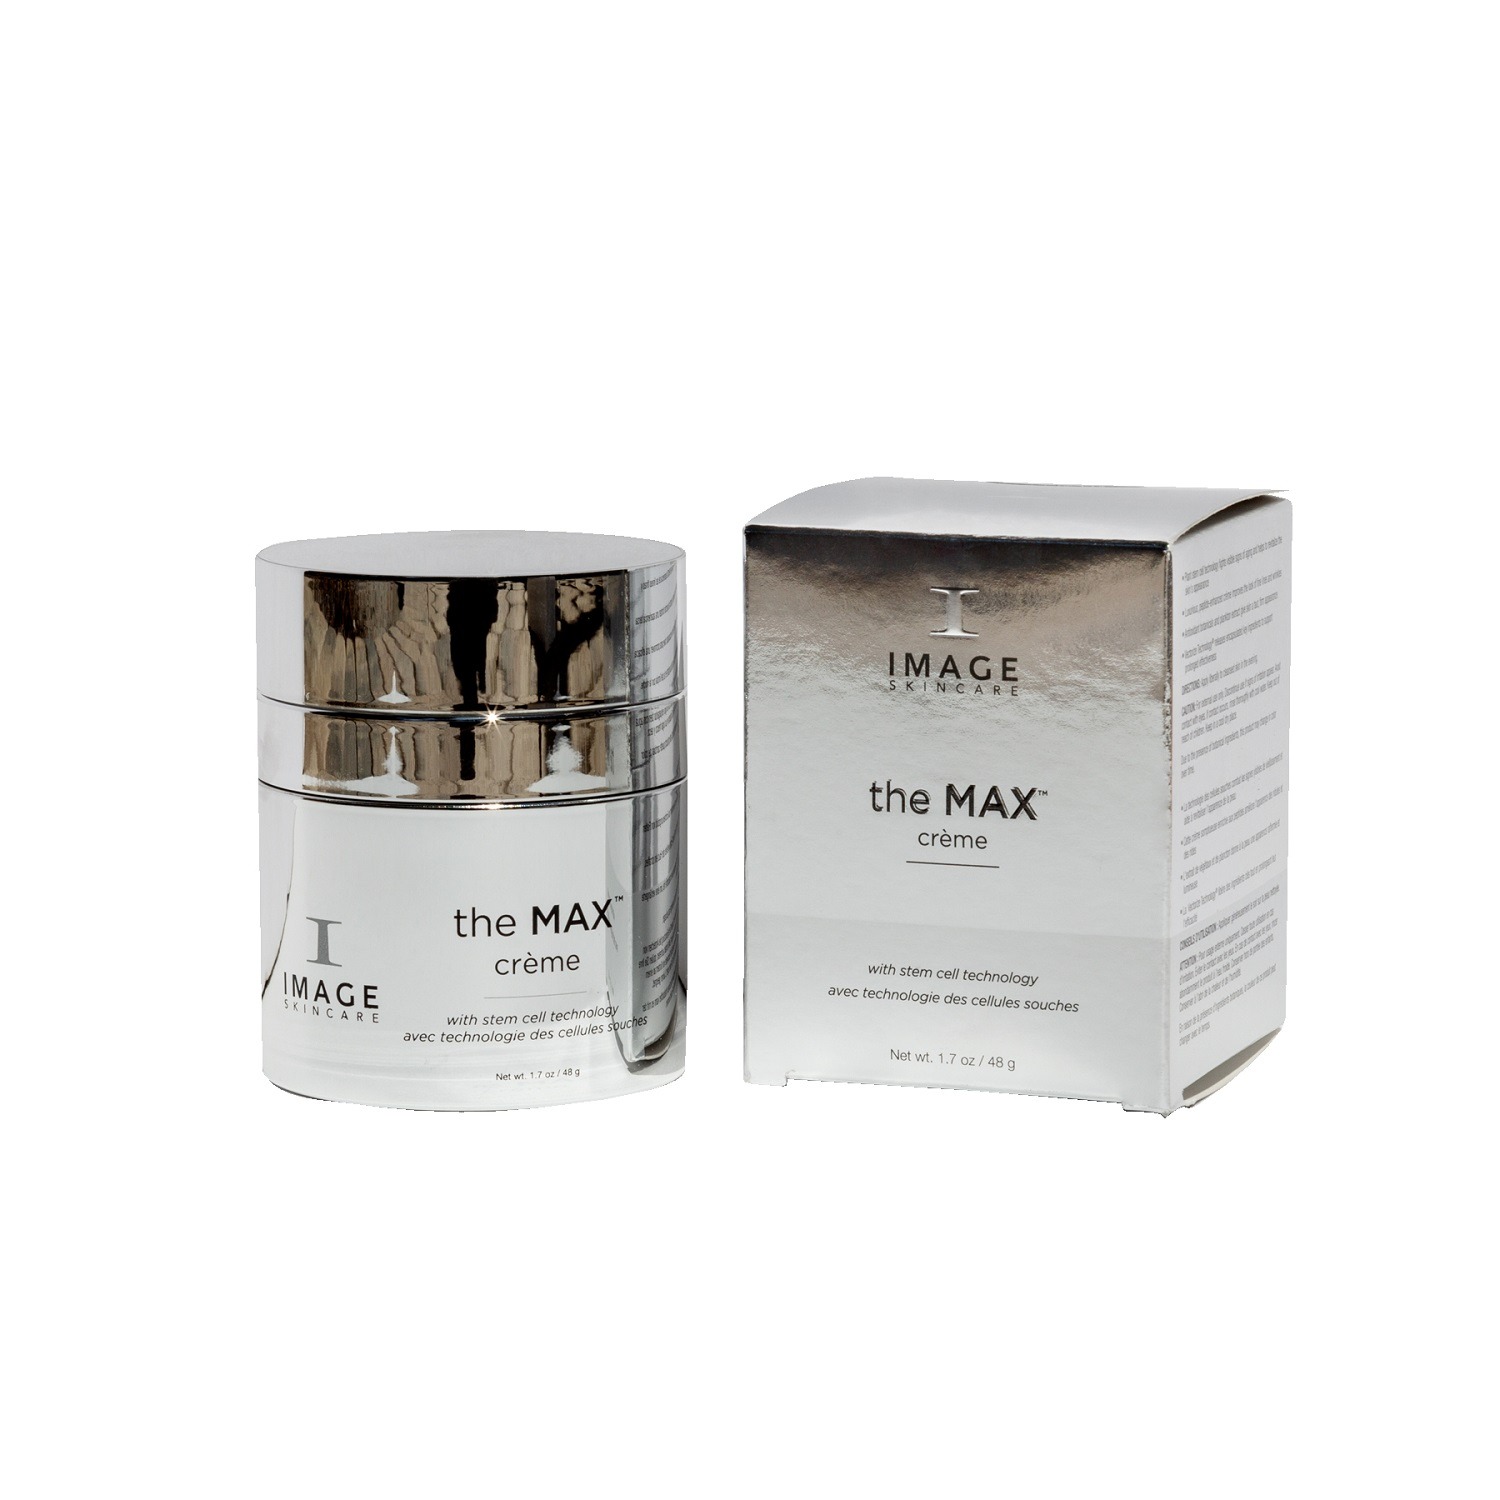 Kem phục hồi và dưỡng ẩm cho tổn thương, mỏng yếu Image Skincare The MAX Crème 48g